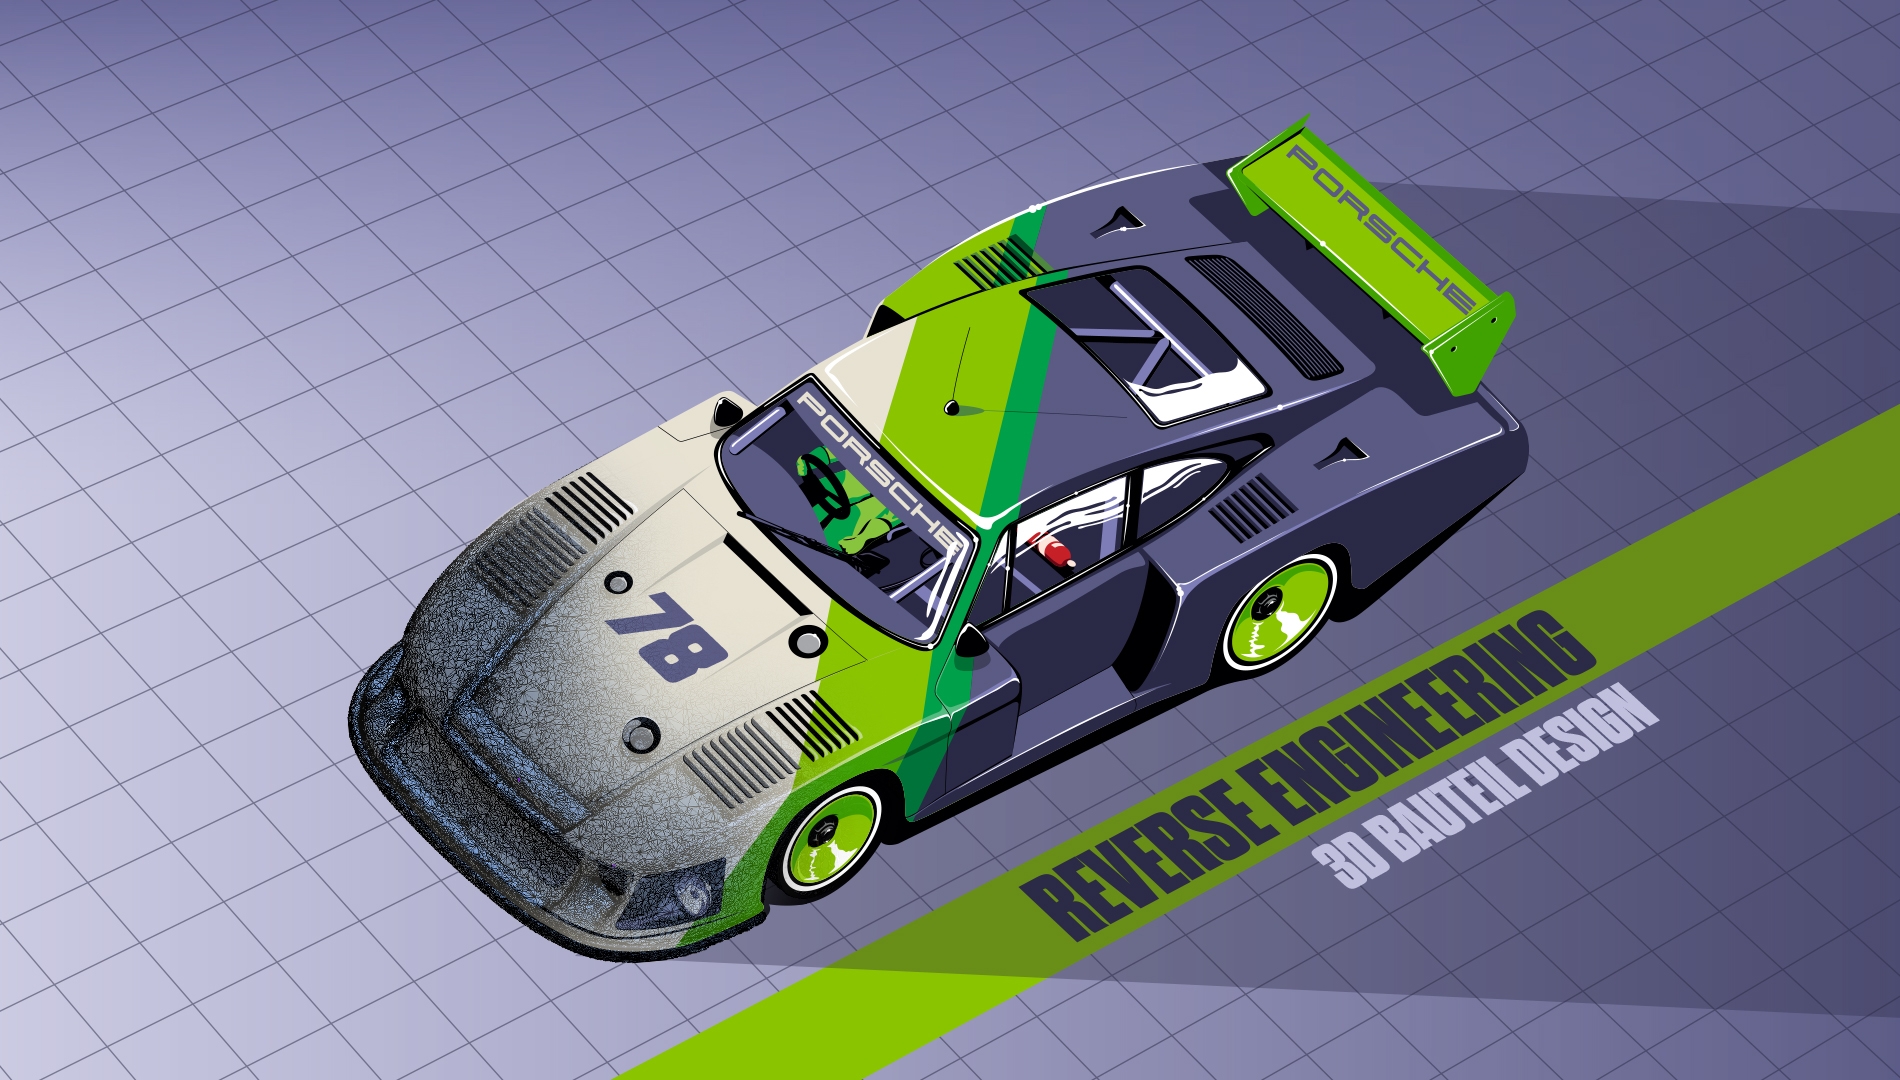 GBROTEC Reverse Engineering 3D Bauteil Design Porsche 935 Solidworks Blender Render Dienstleister Dienstleistung CAD Engineering